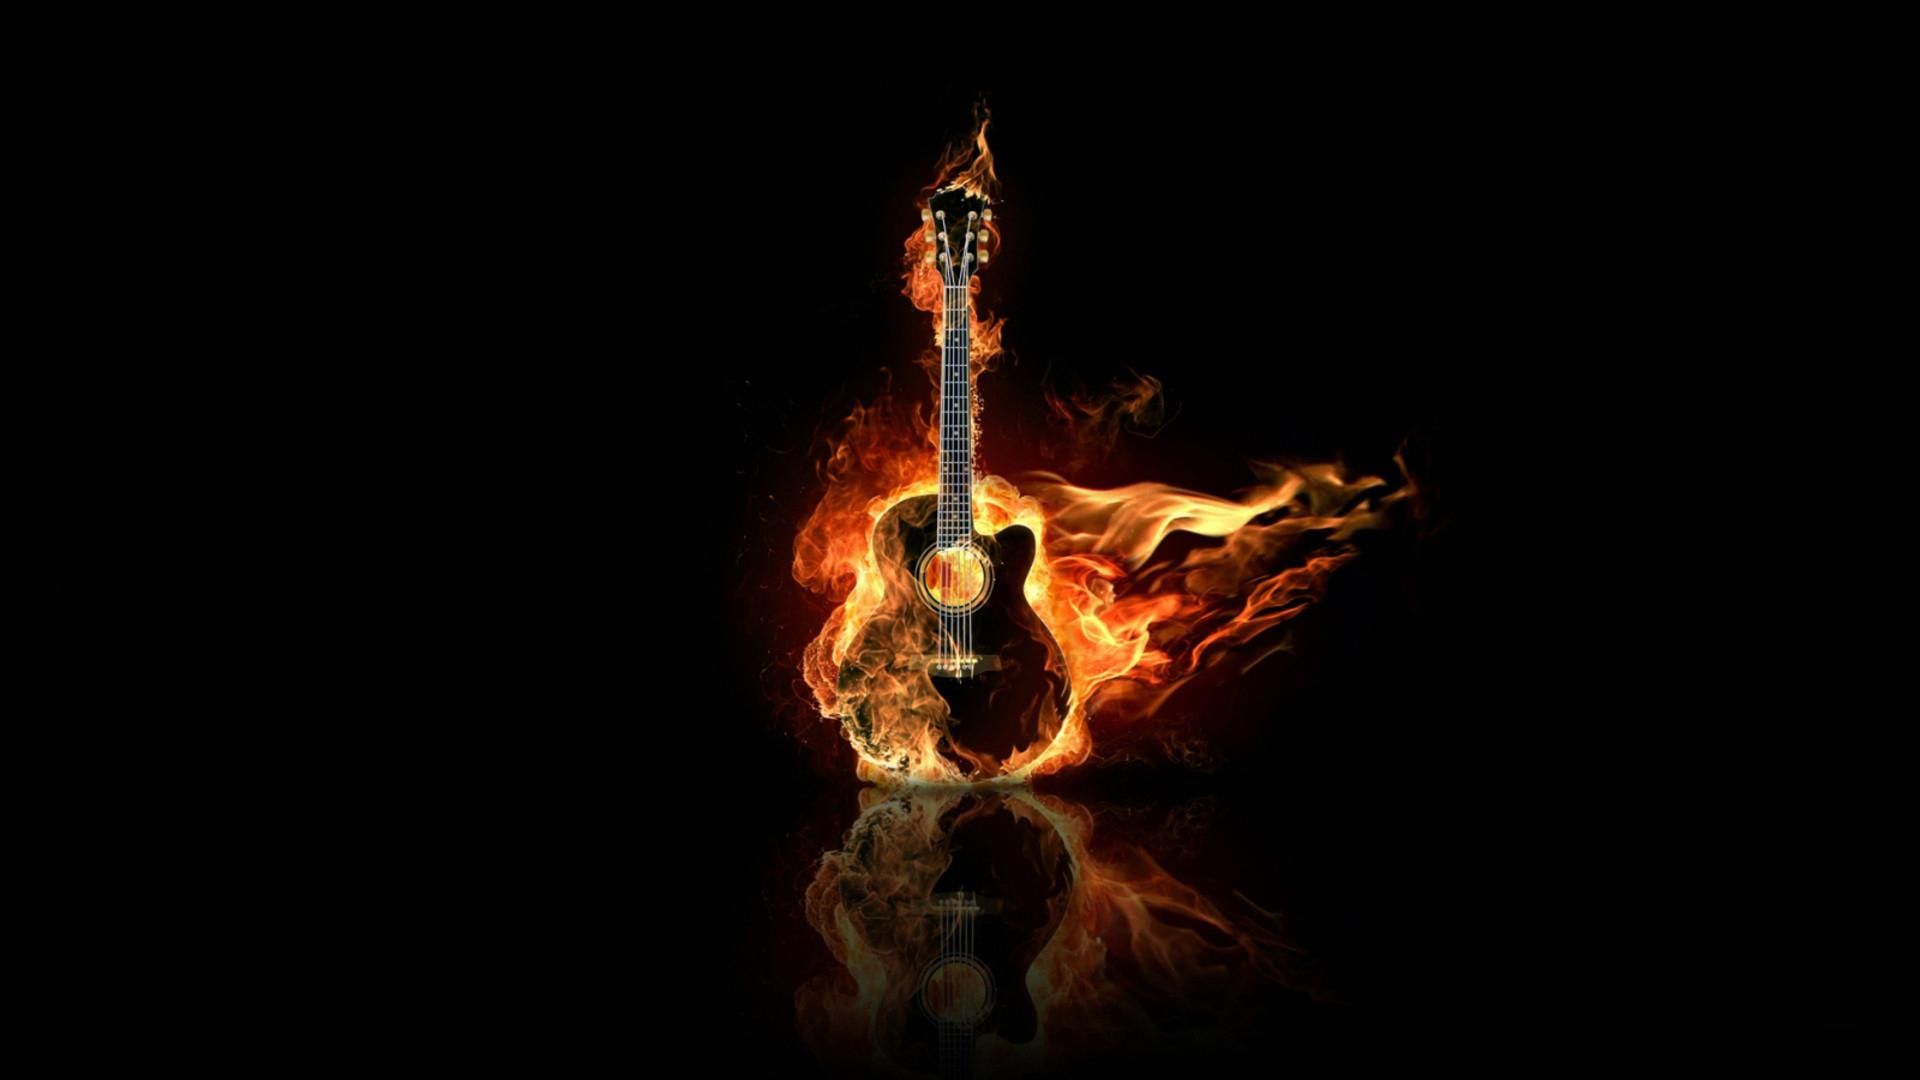 Guitar On Fire #burn #guitar #music #fire 3D and abstract P #wallpaper #hdwallpaper #desktop. Guitar illustration, Wallpaper, Abstract